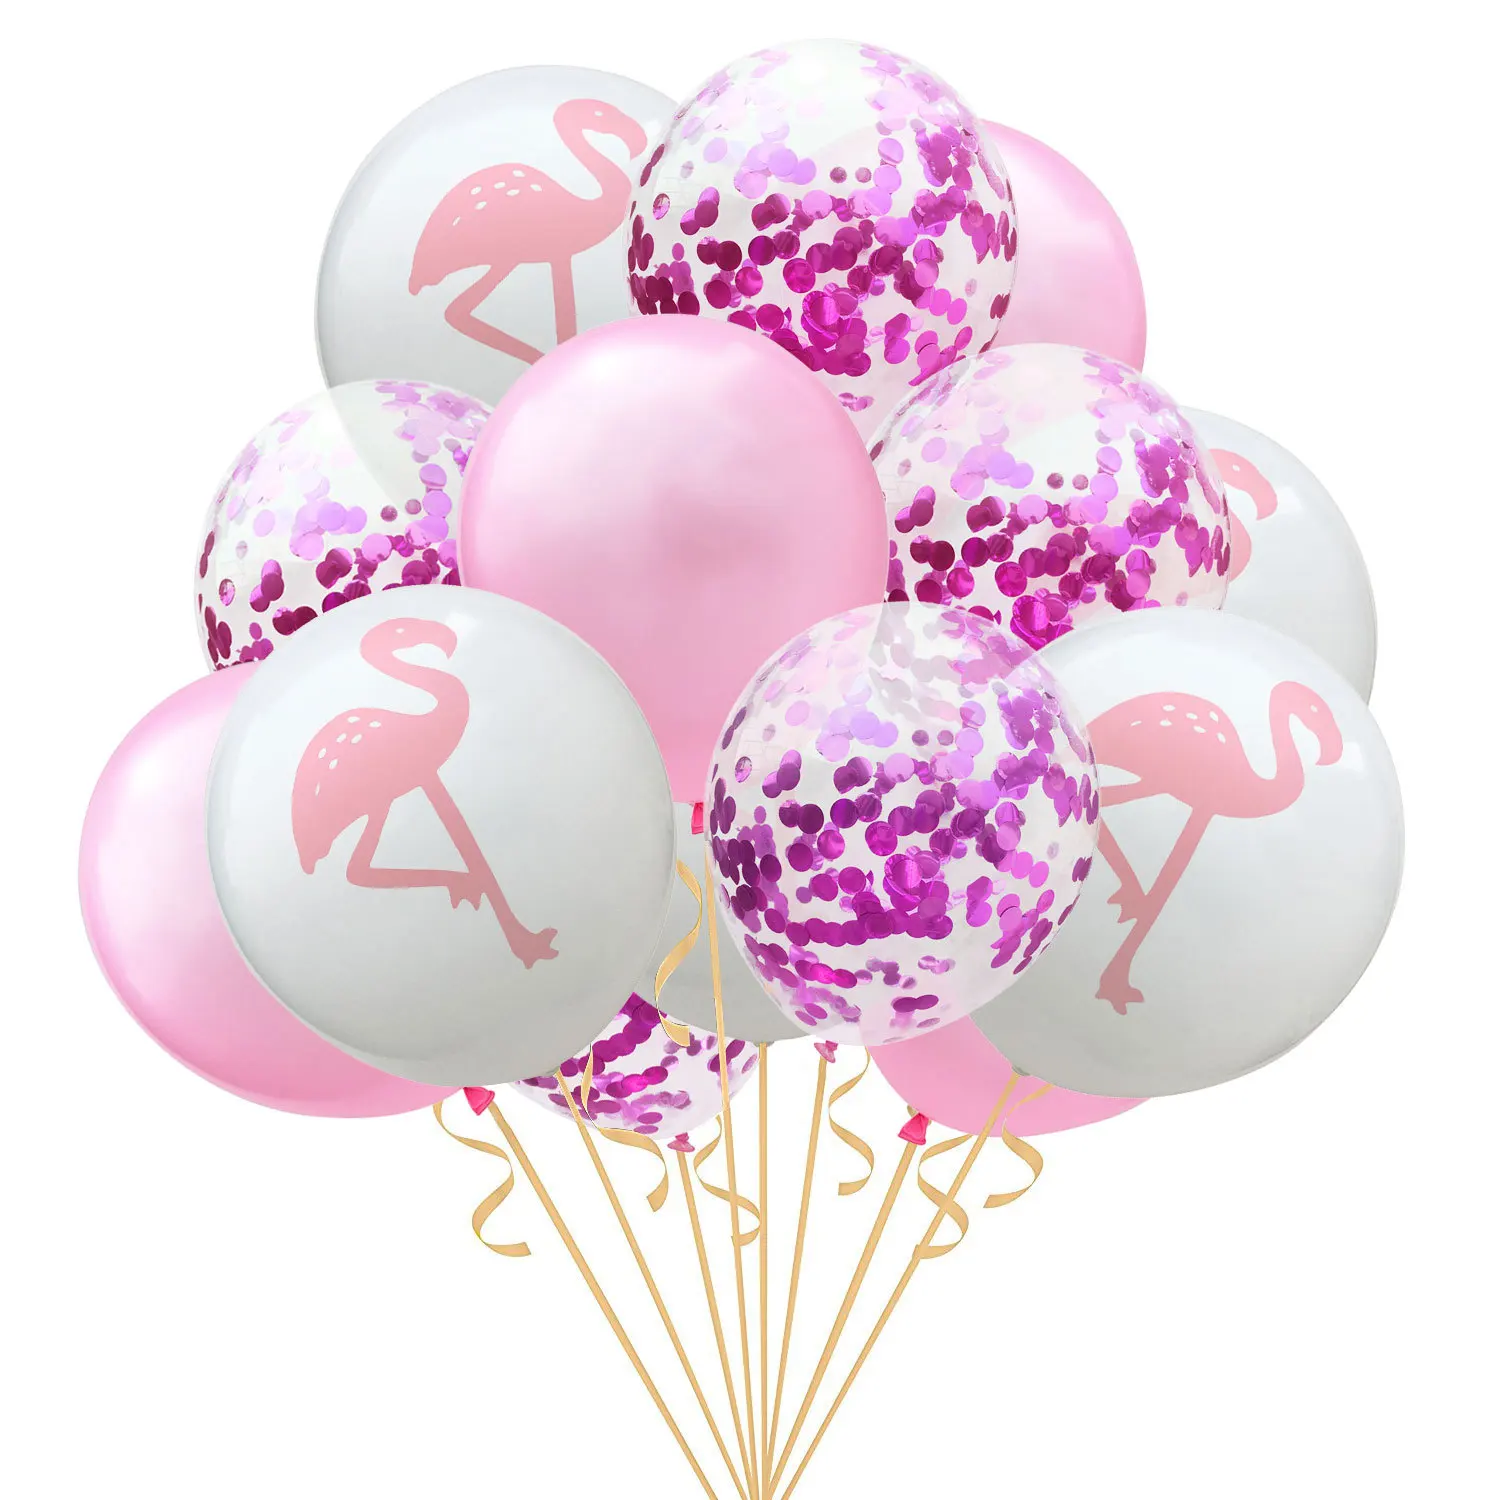 15 шт./упак. надувной шар шляпа игрушка 12 дюймов на день рождения воздушный шар в форме ананаса игрушки надувной шапка Детская Вечеринка шар игрушечная шапка - Цвет: rose flamingo